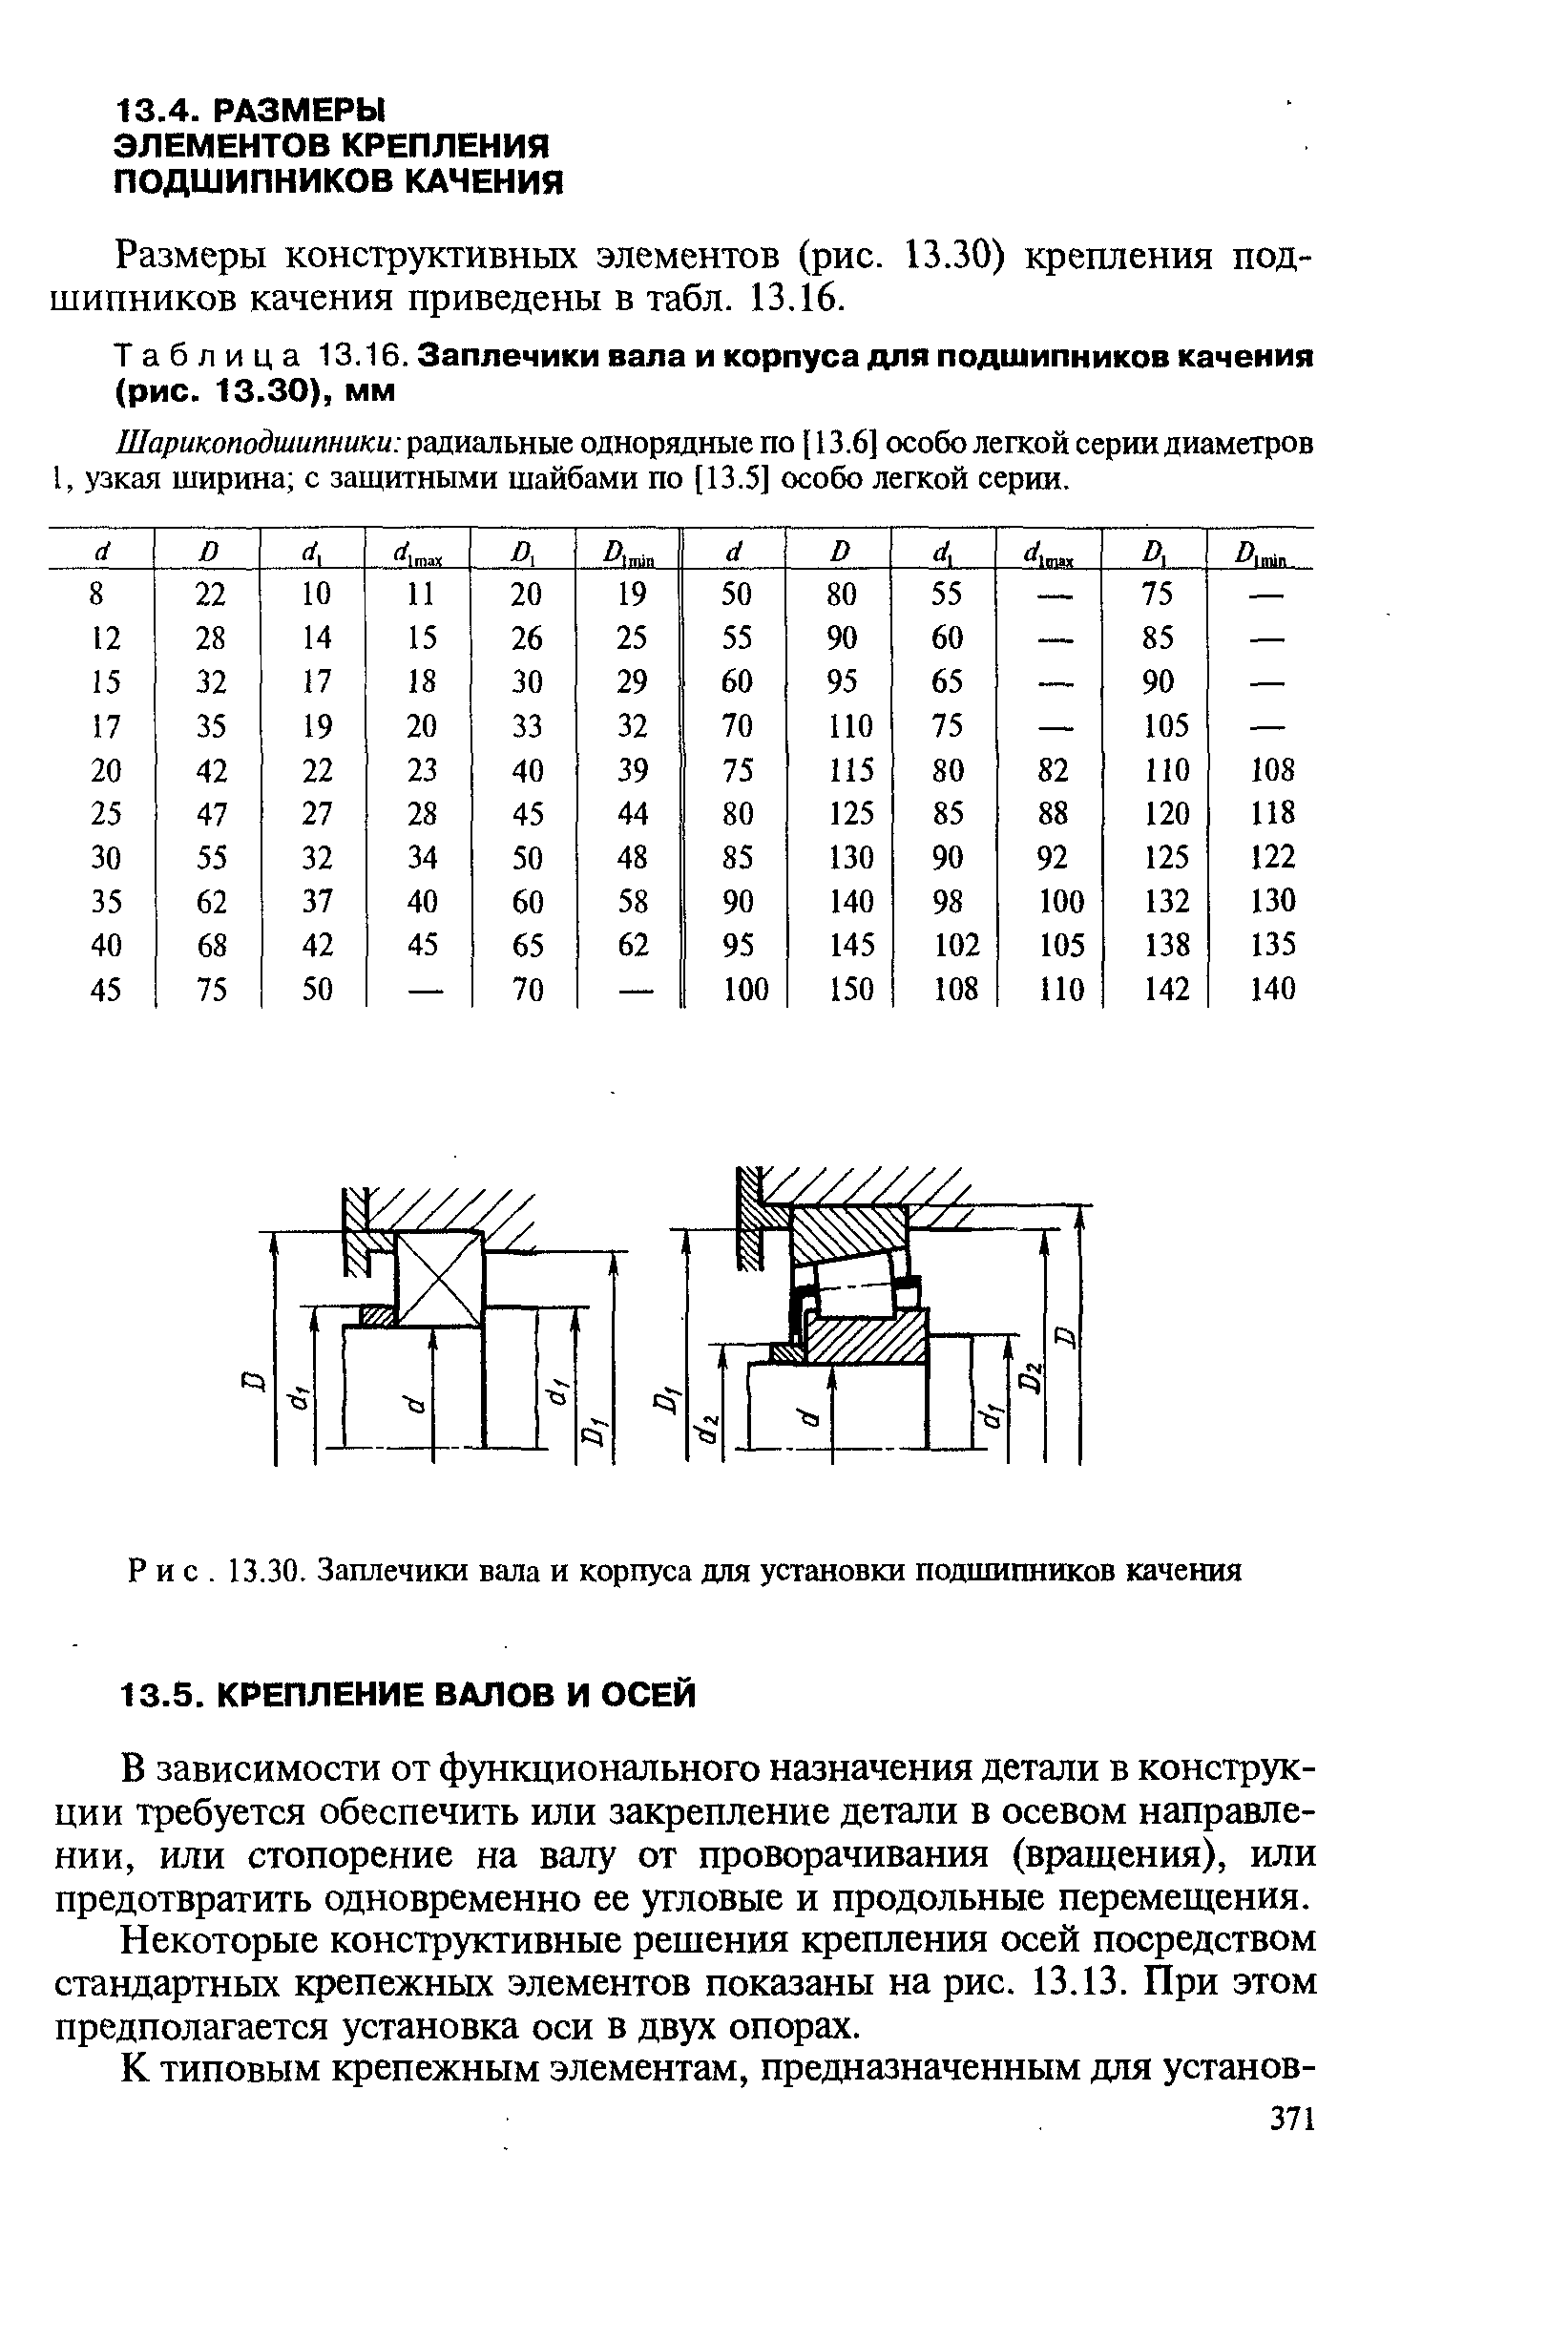 Таблица 13.16. Заплечики вала и корпуса для подшипников качения (рис. 13.30), мм
